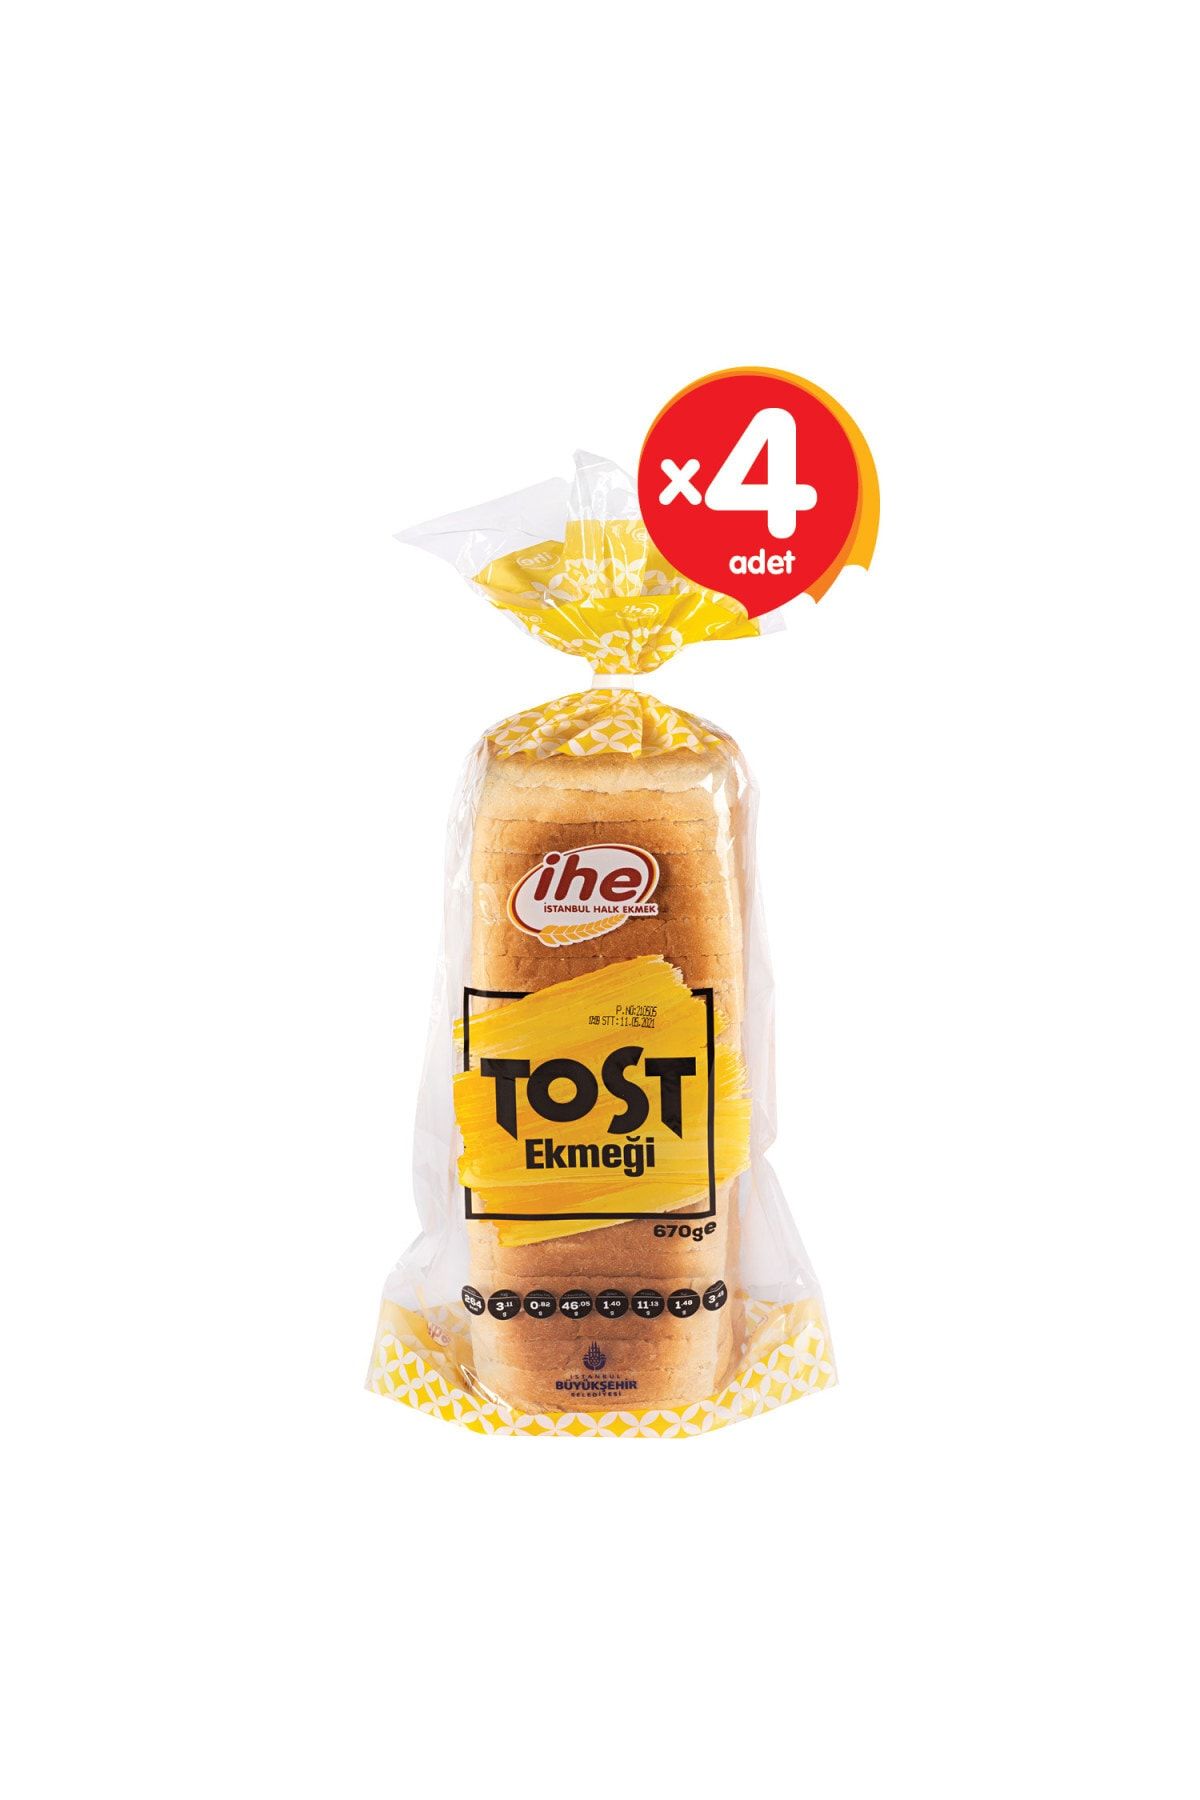 İhe Tost Ekmeği 670 G (4 ADET)